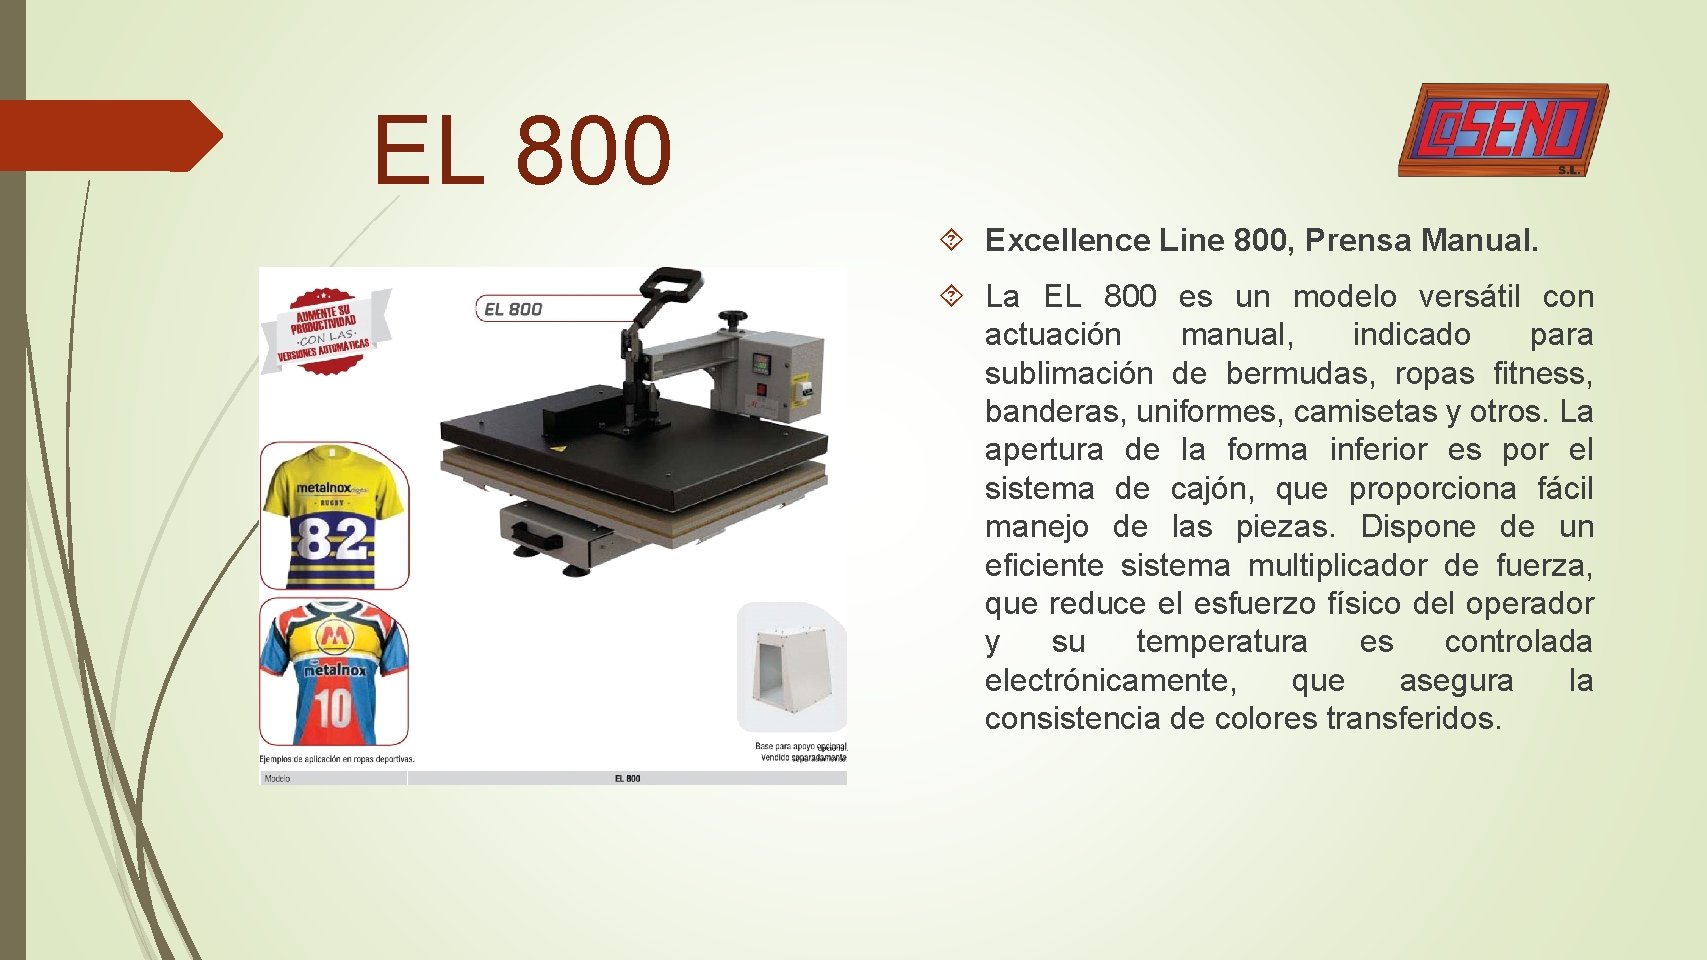 EL 800 Excellence Line 800, Prensa Manual. La EL 800 es un modelo versátil